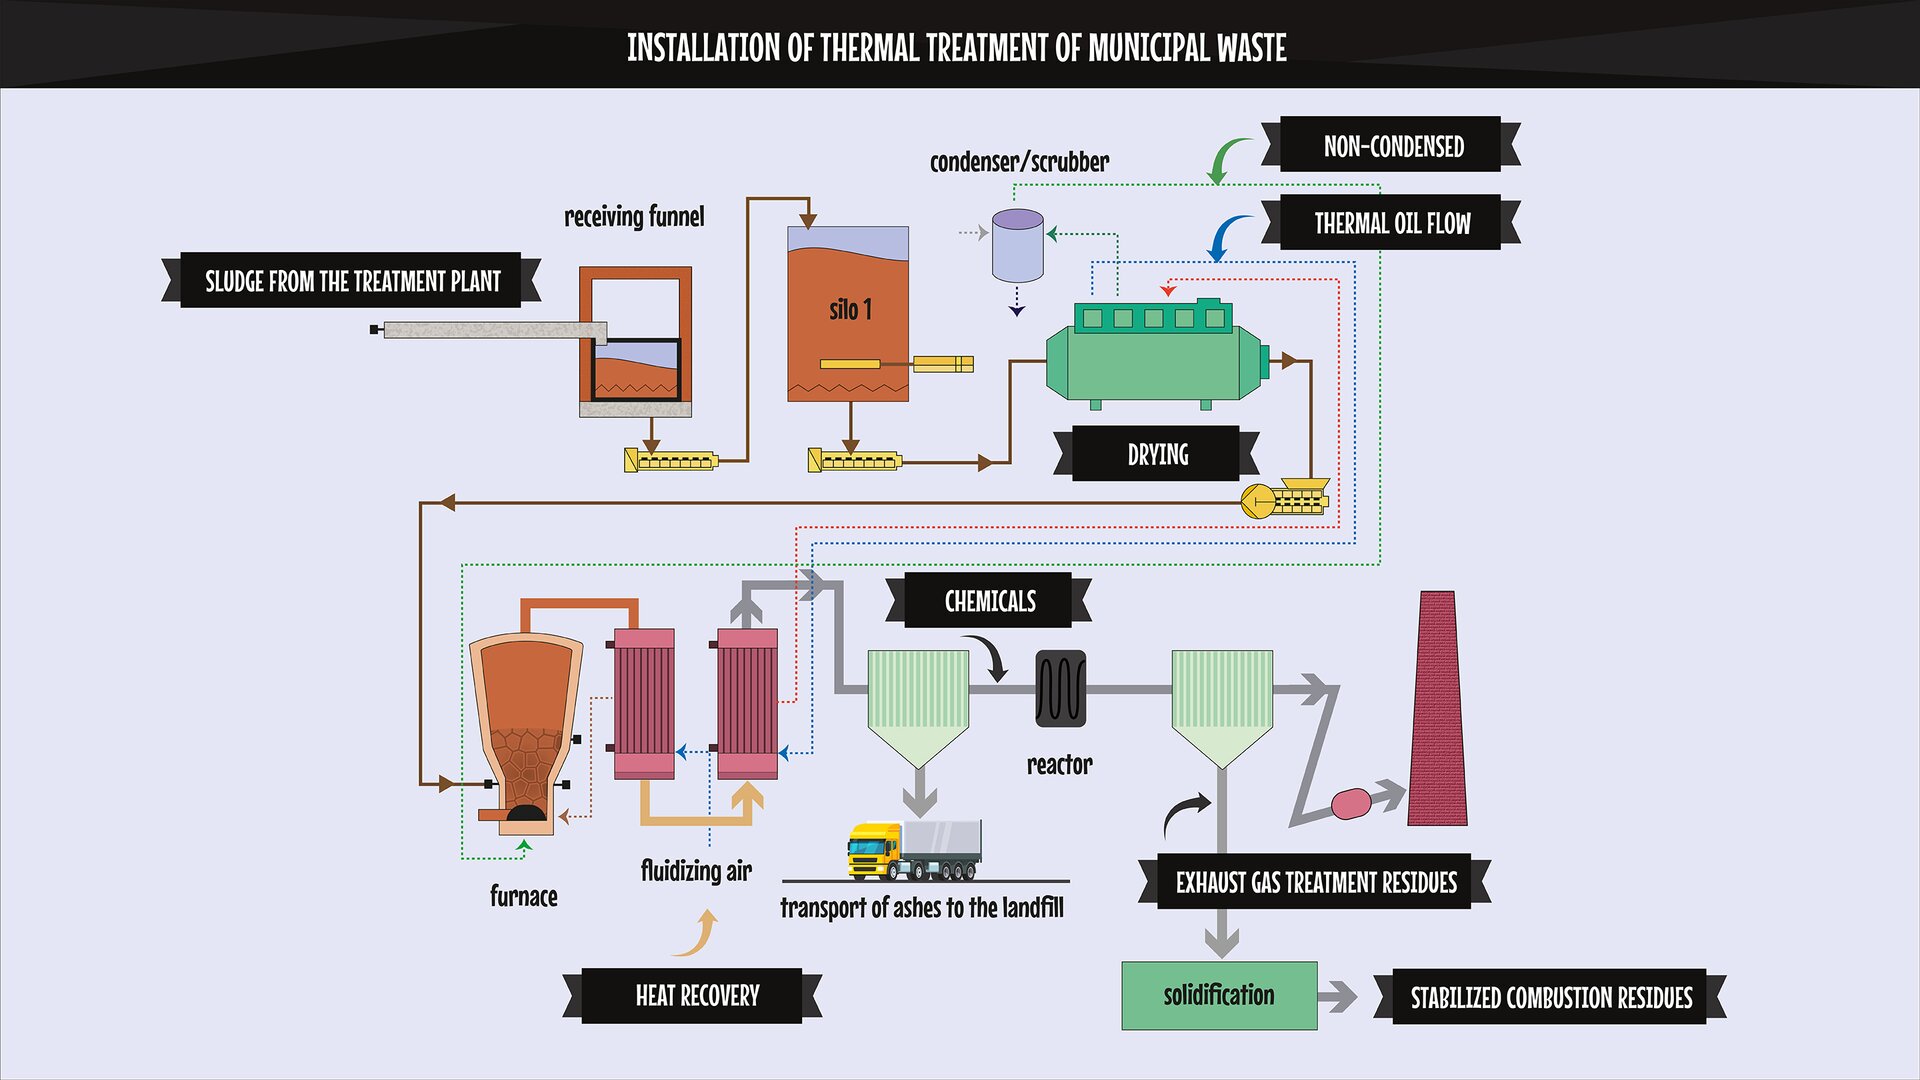 The image presents a diagram of an installation of thermal treatment of municipal waste. Grafika prezentuje schemat instalacji termicznego przekształcania odpadów komunalnych.